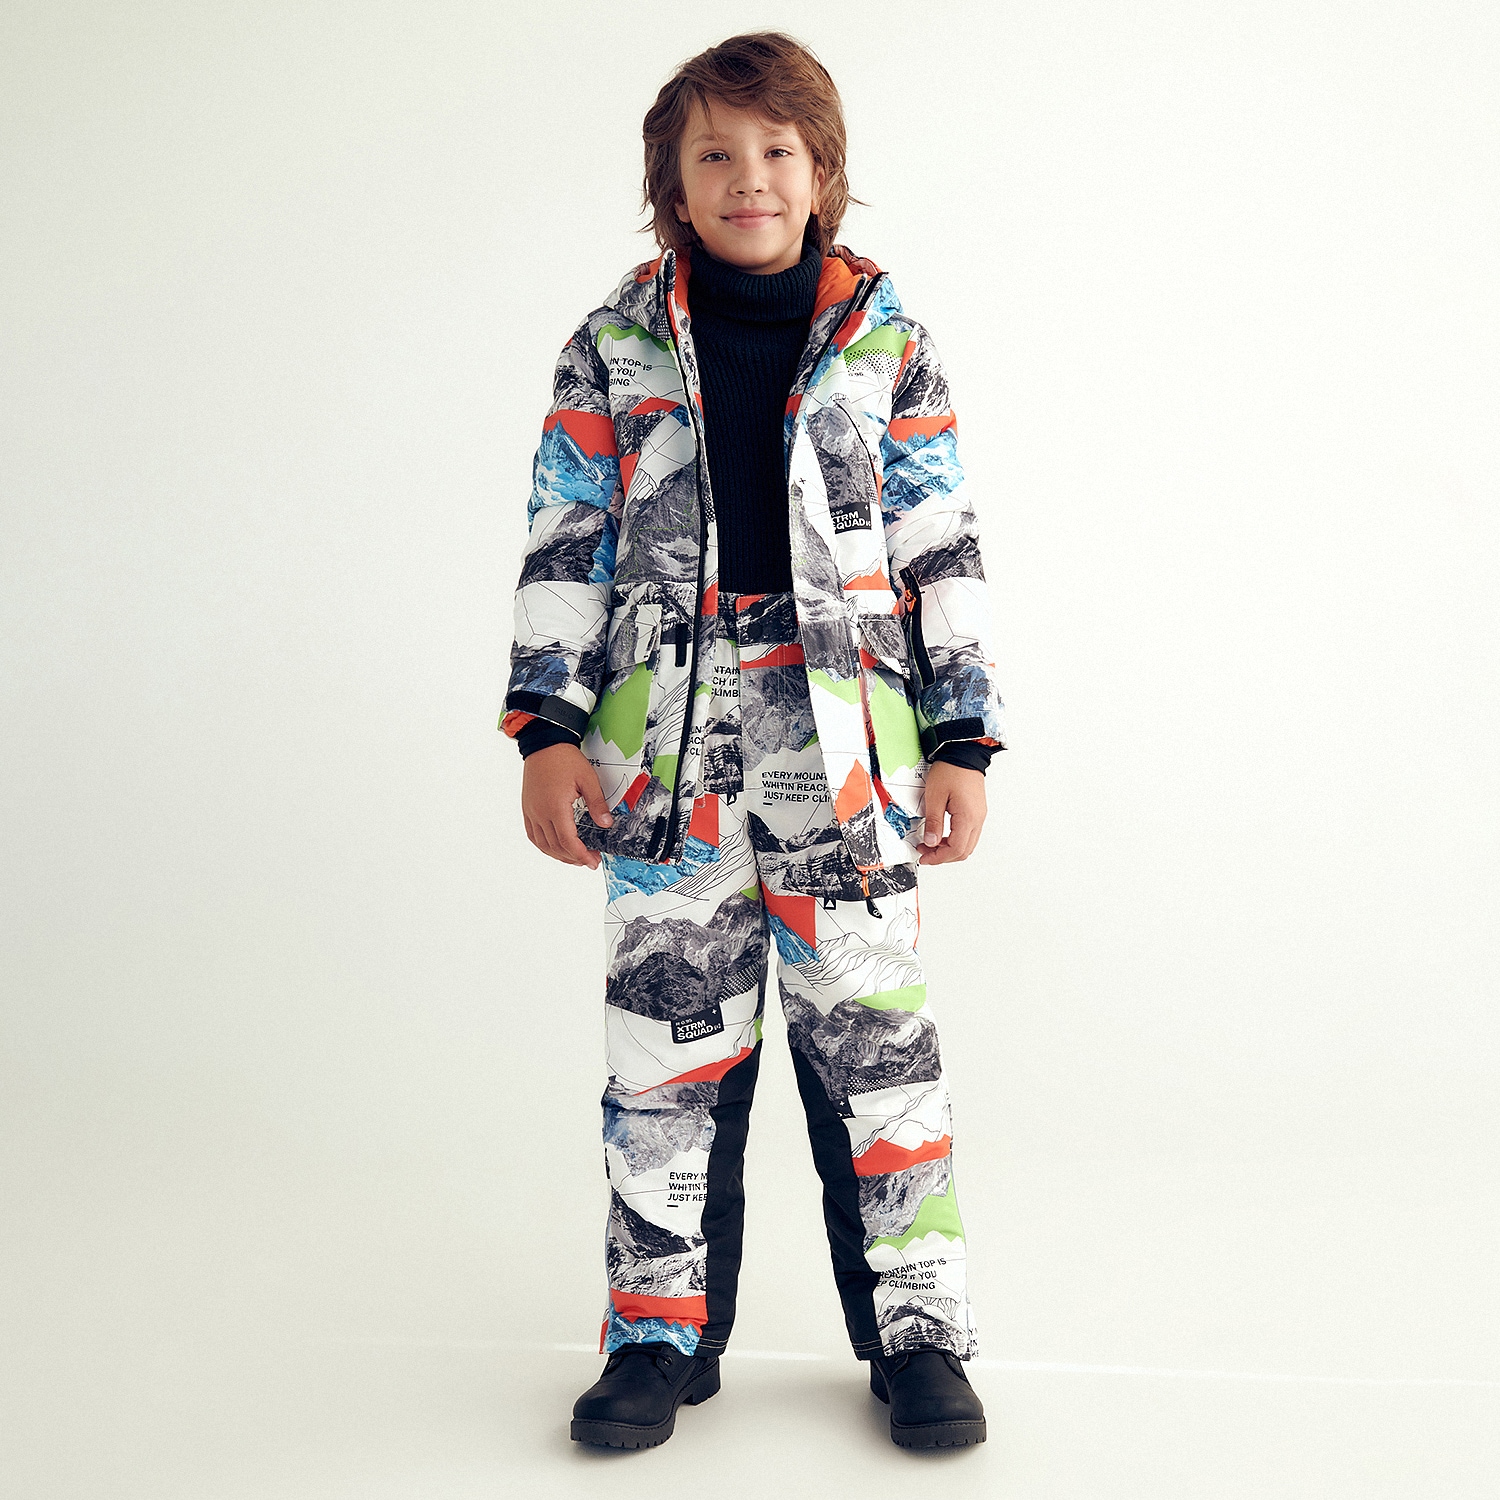 Reserved – Geacă pentru snowboard – Multicolor Boy imagine noua gjx.ro